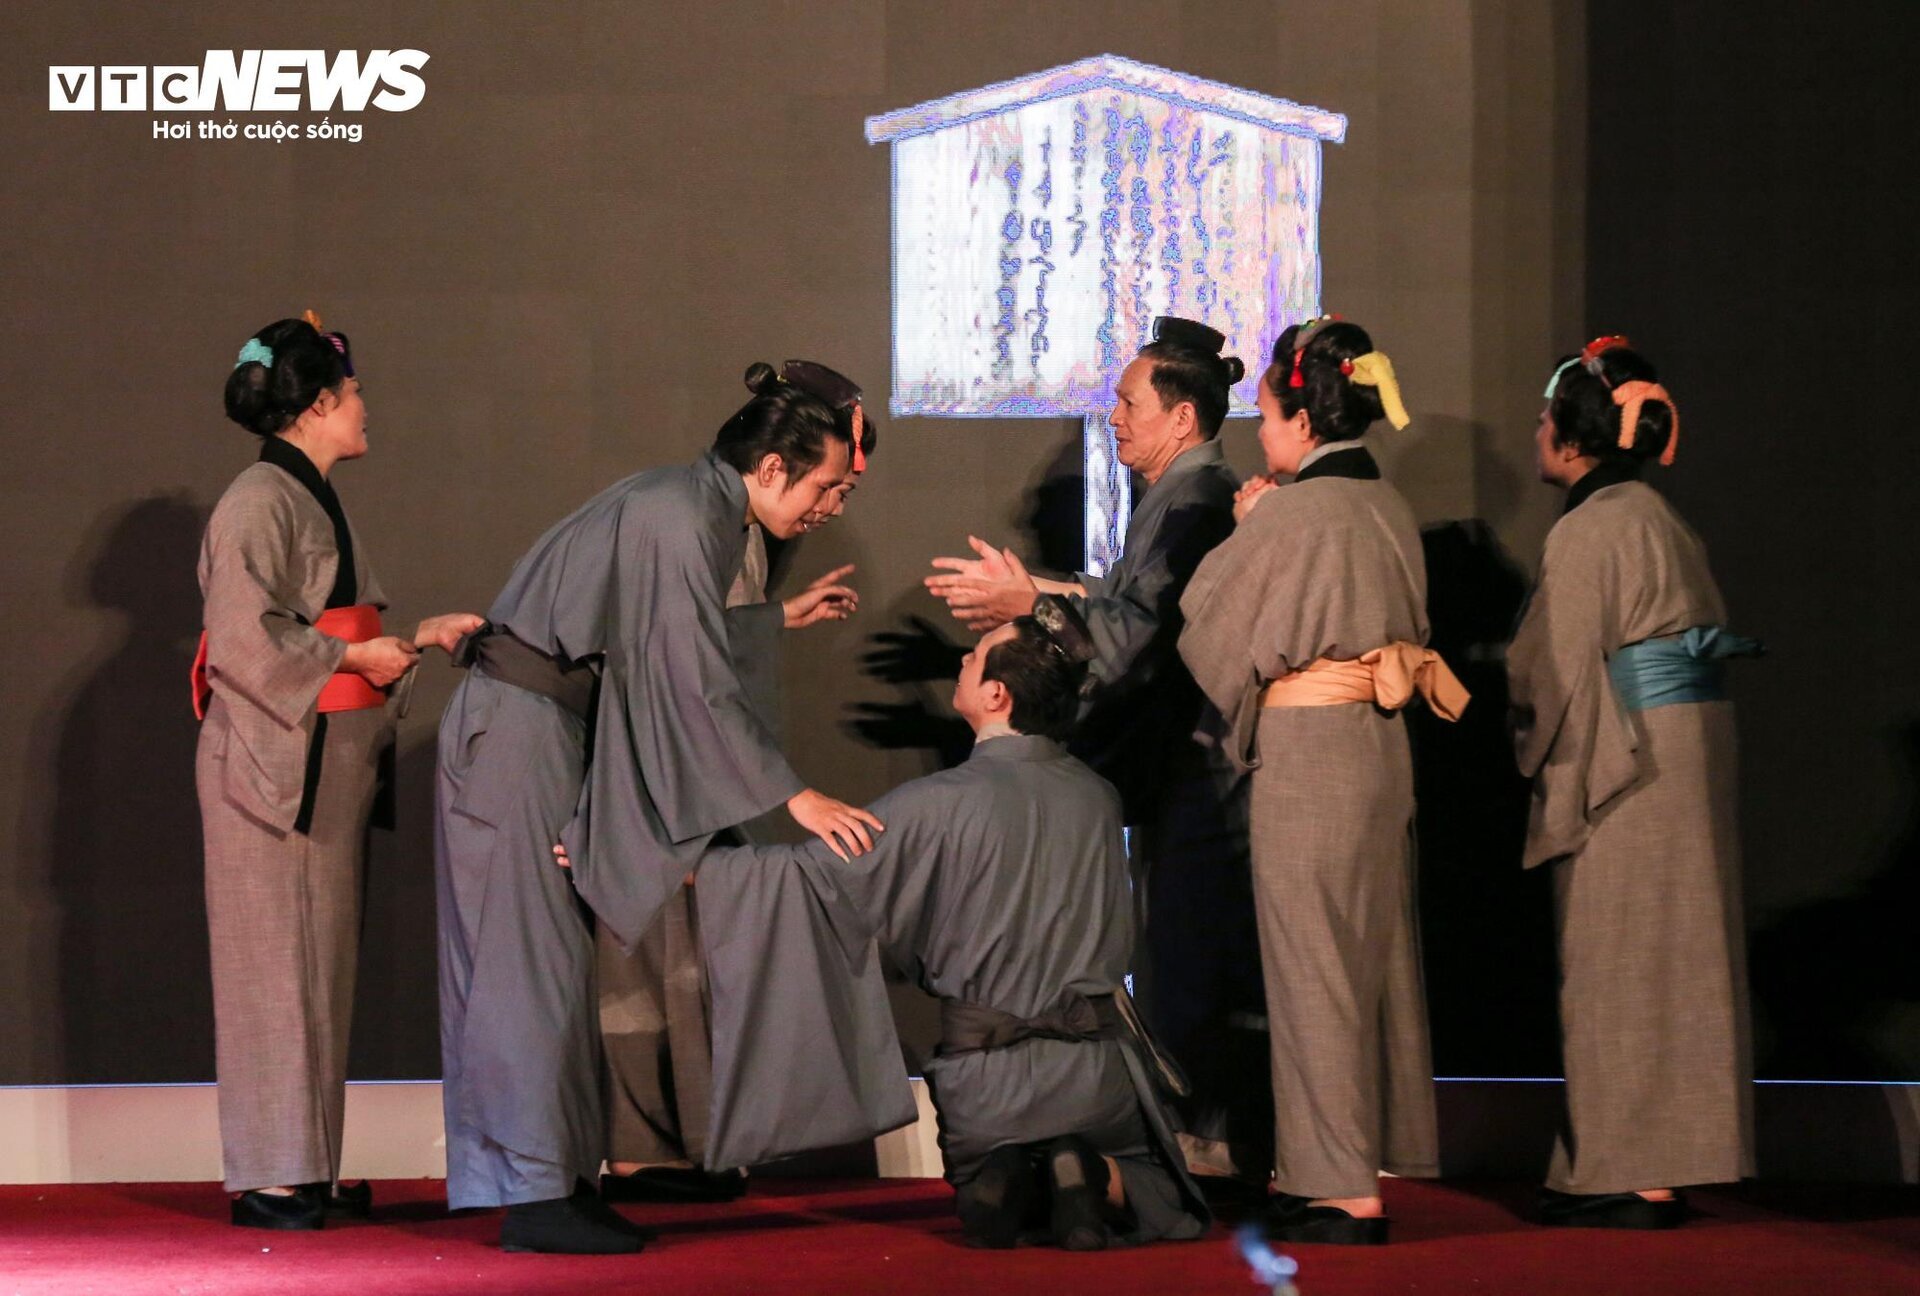 Biểu diễn vở opera kỷ niệm 50 năm quan hệ ngoại giao Việt Nam - Nhật Bản - 20